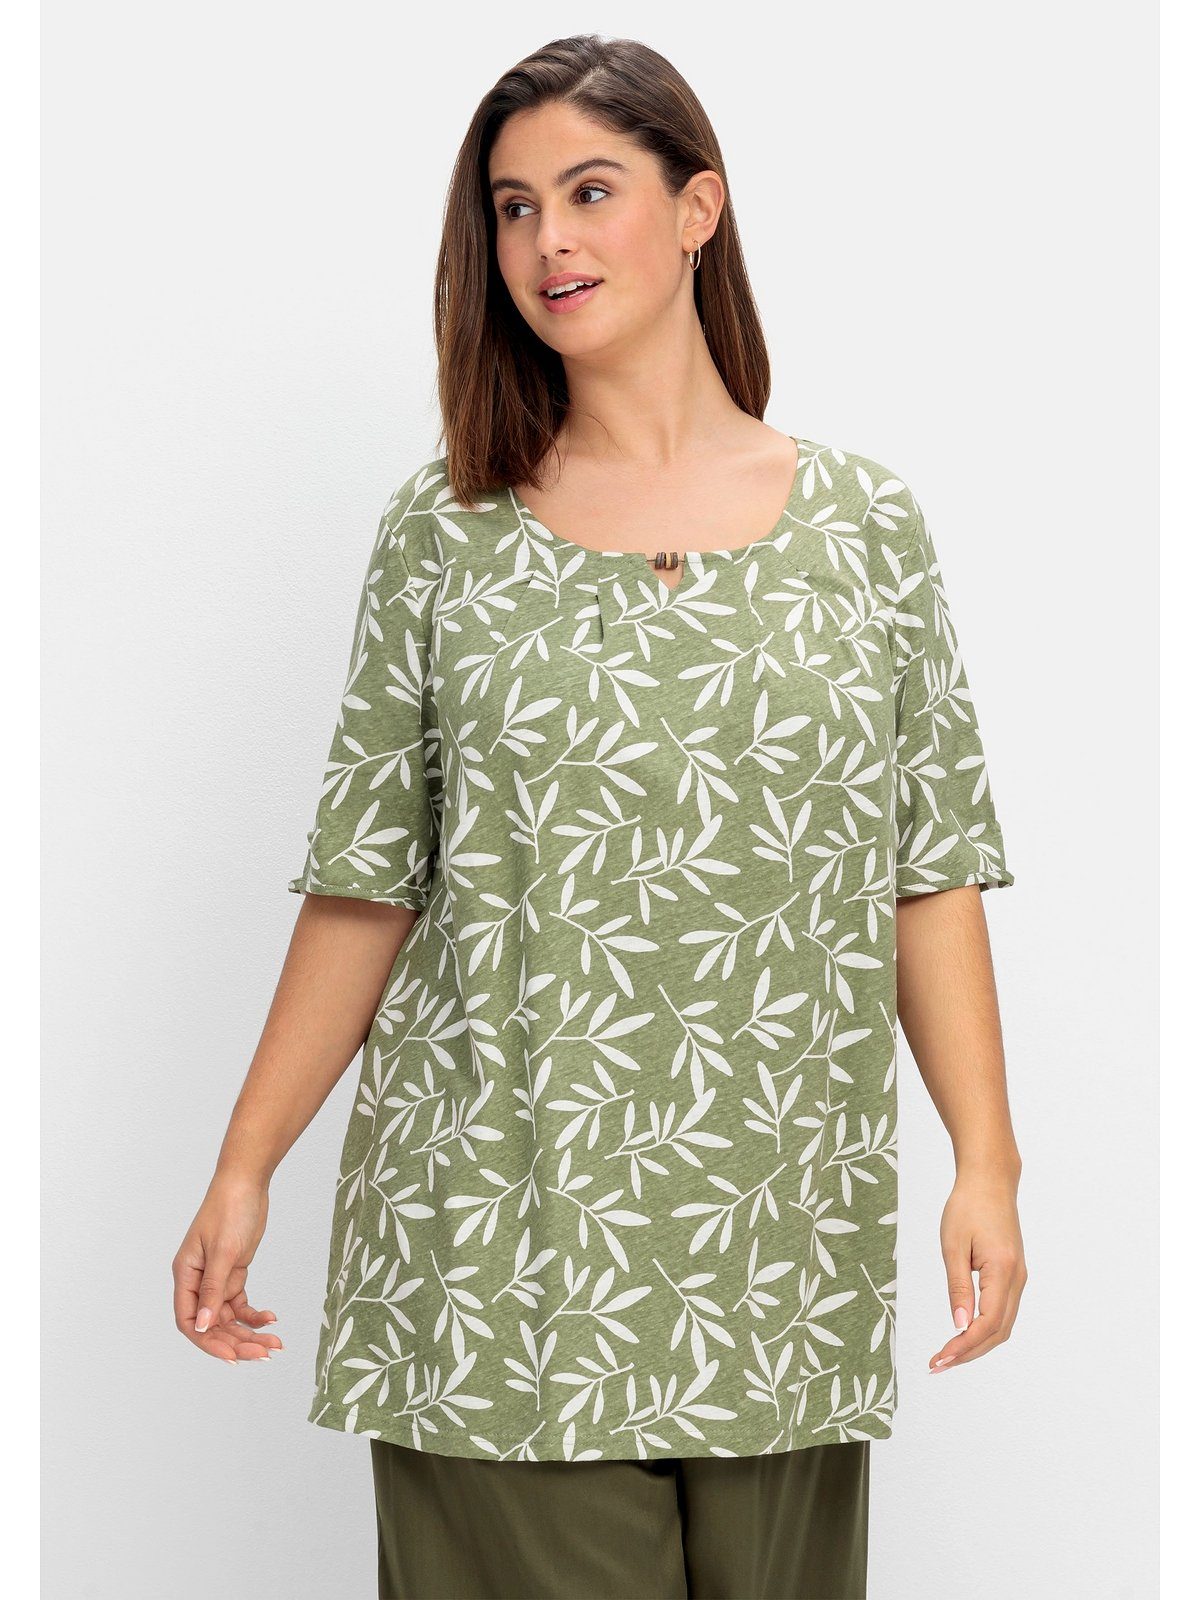 Das Beste dieser Saison Sheego T-Shirt Große Größen mit khaki gemustert Blätterprint, Leinen-Mix im